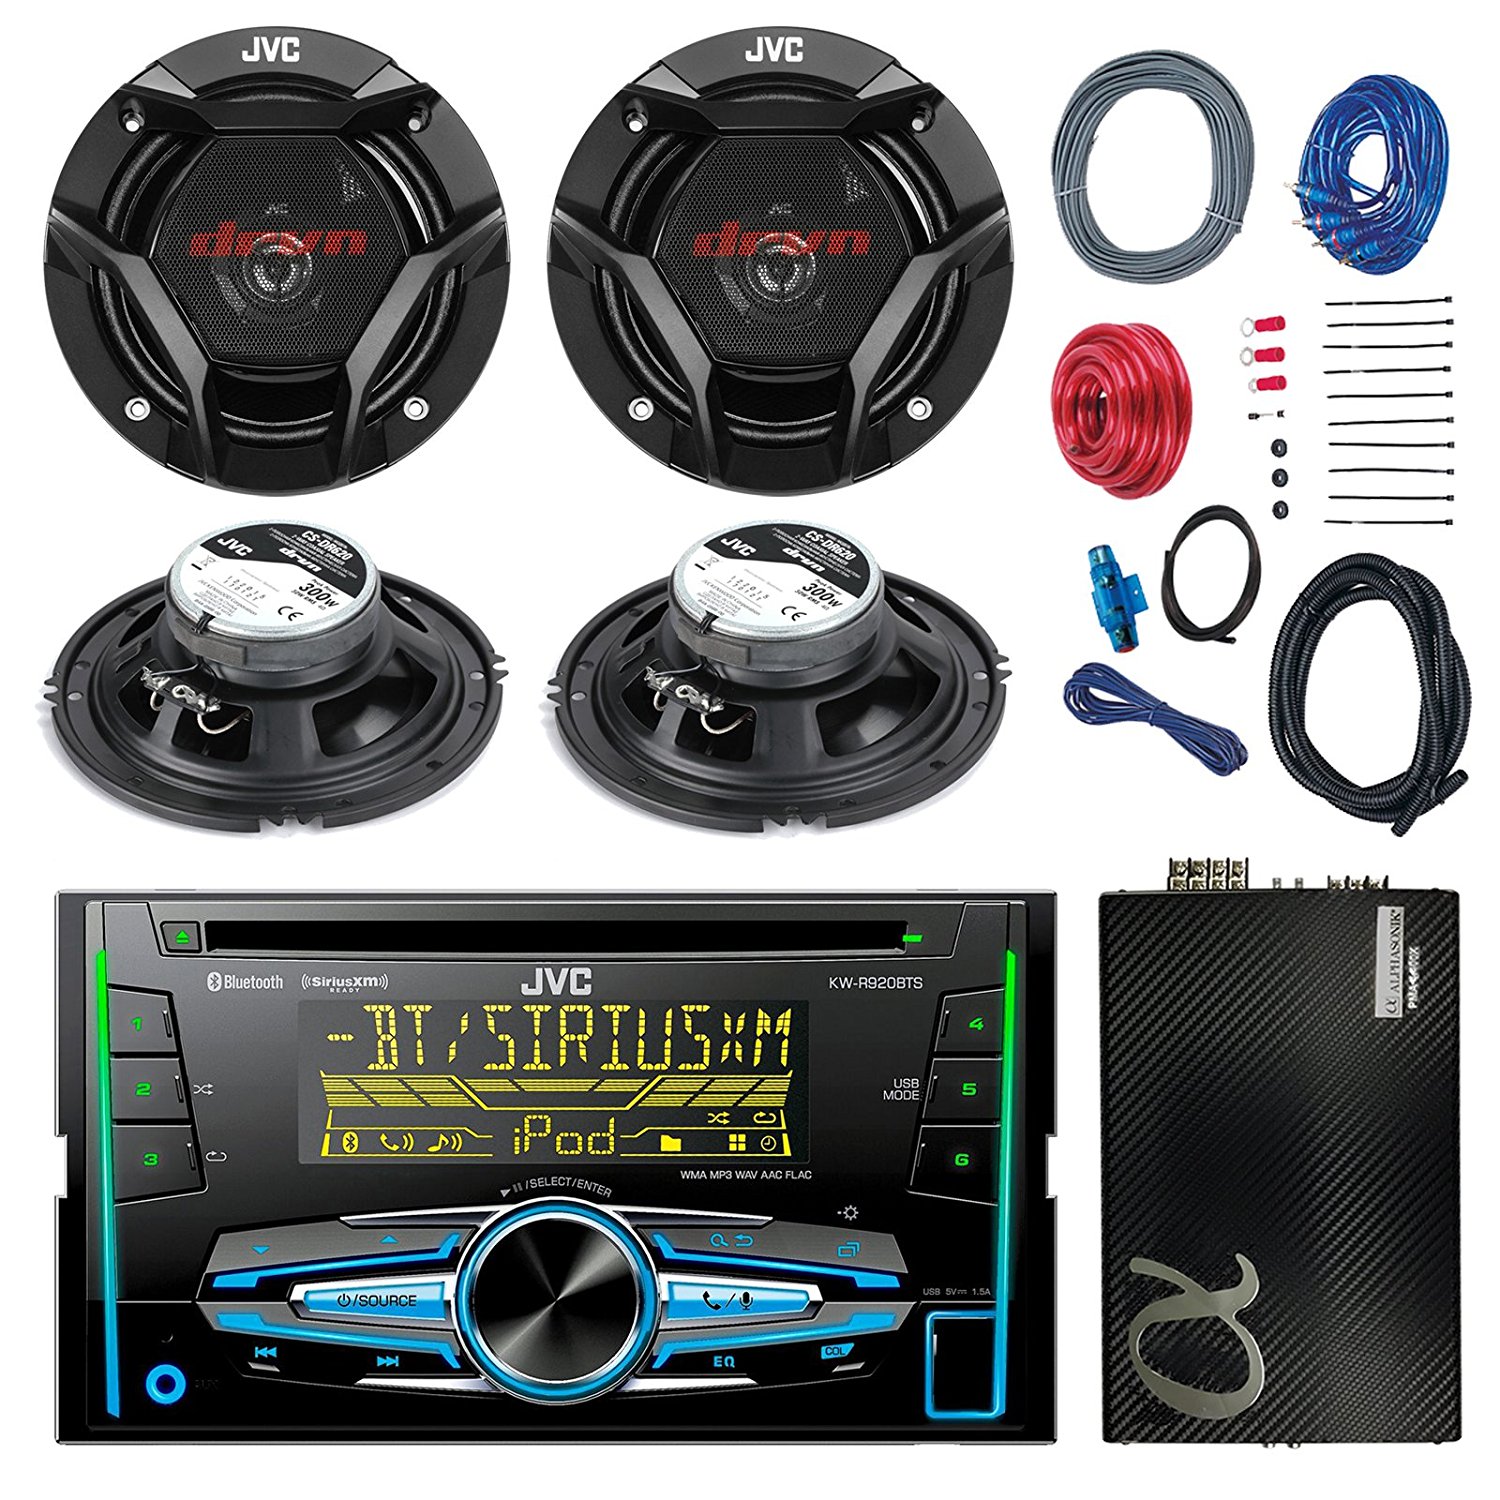 Kit complet Opel Astra J JVC KW r920bt Bluetooth CD USB AUX MP3